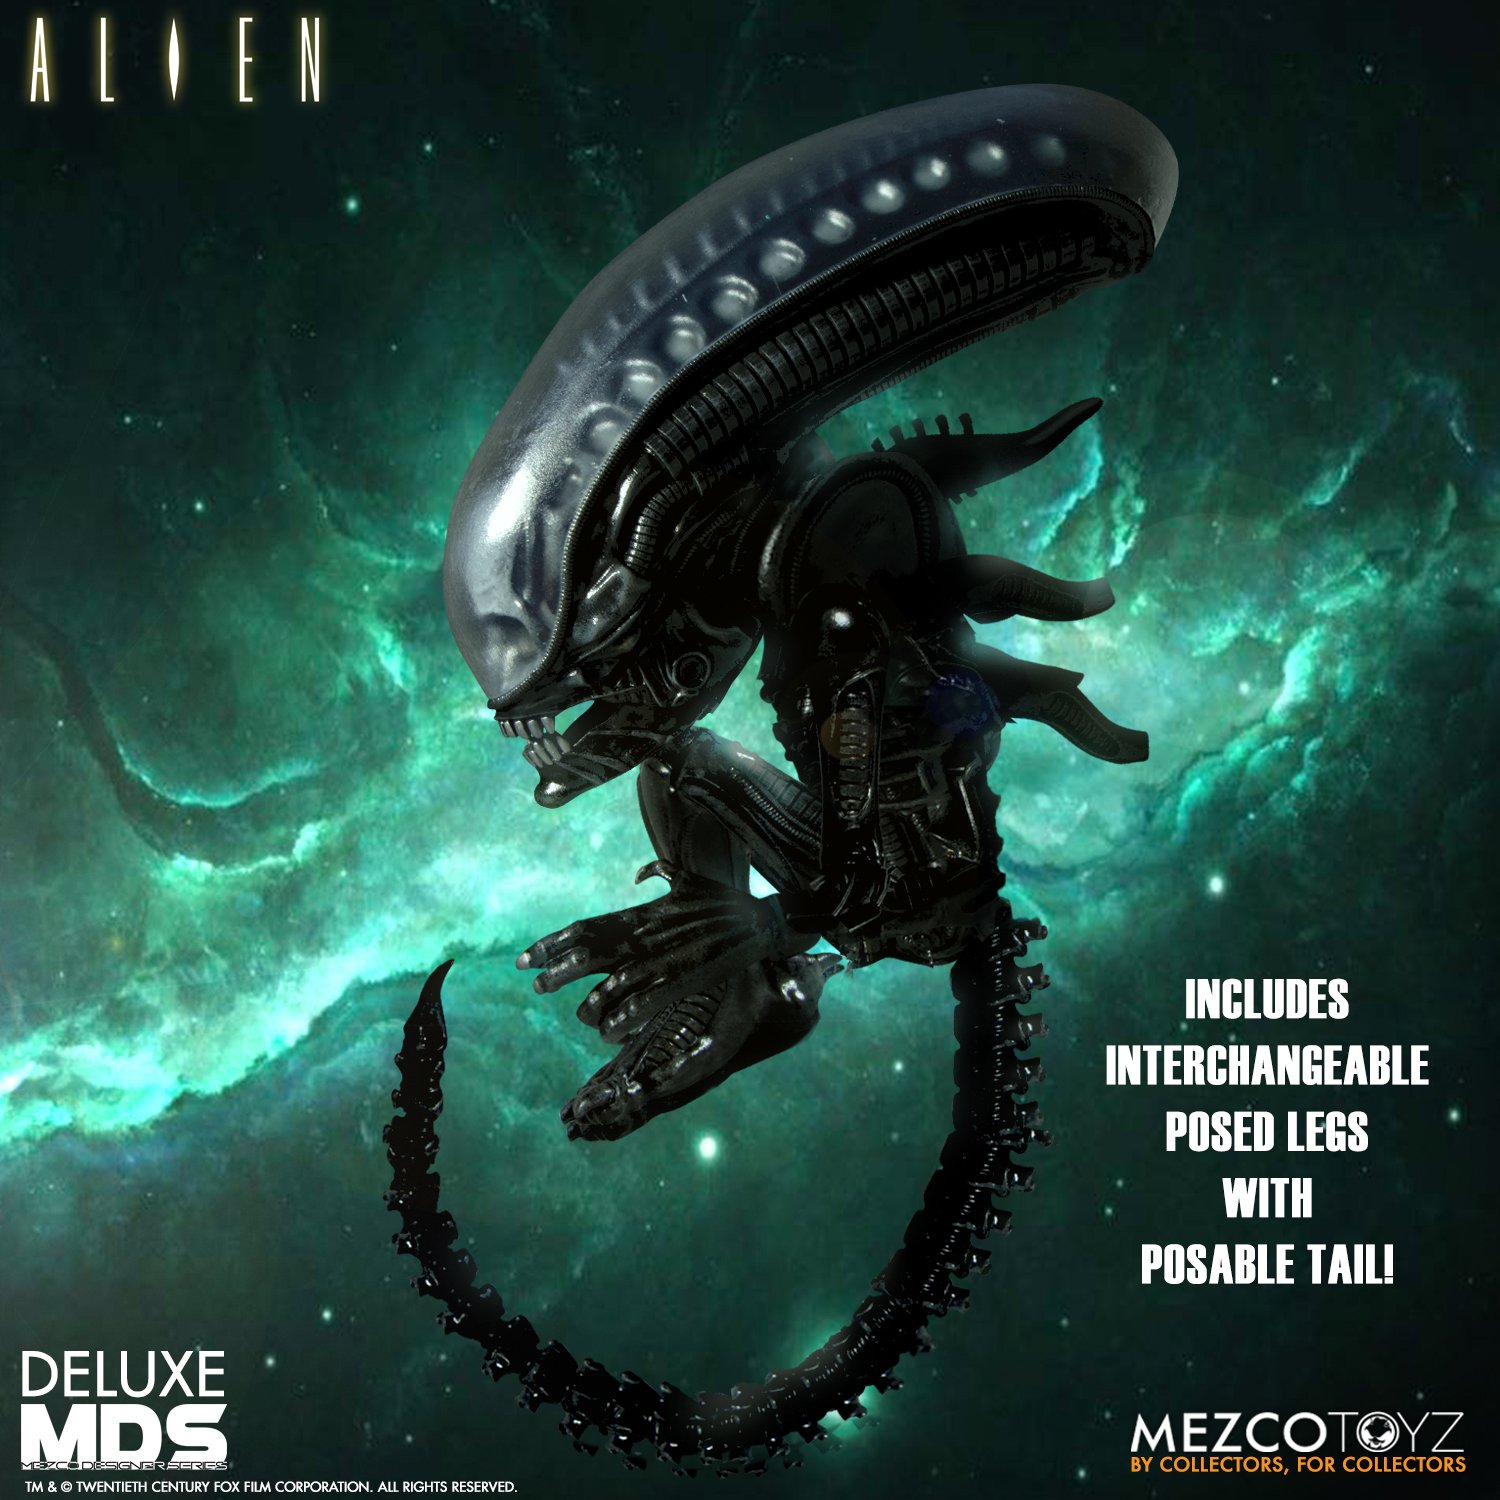 Mezco Alien Deluxe Designer Series Figure